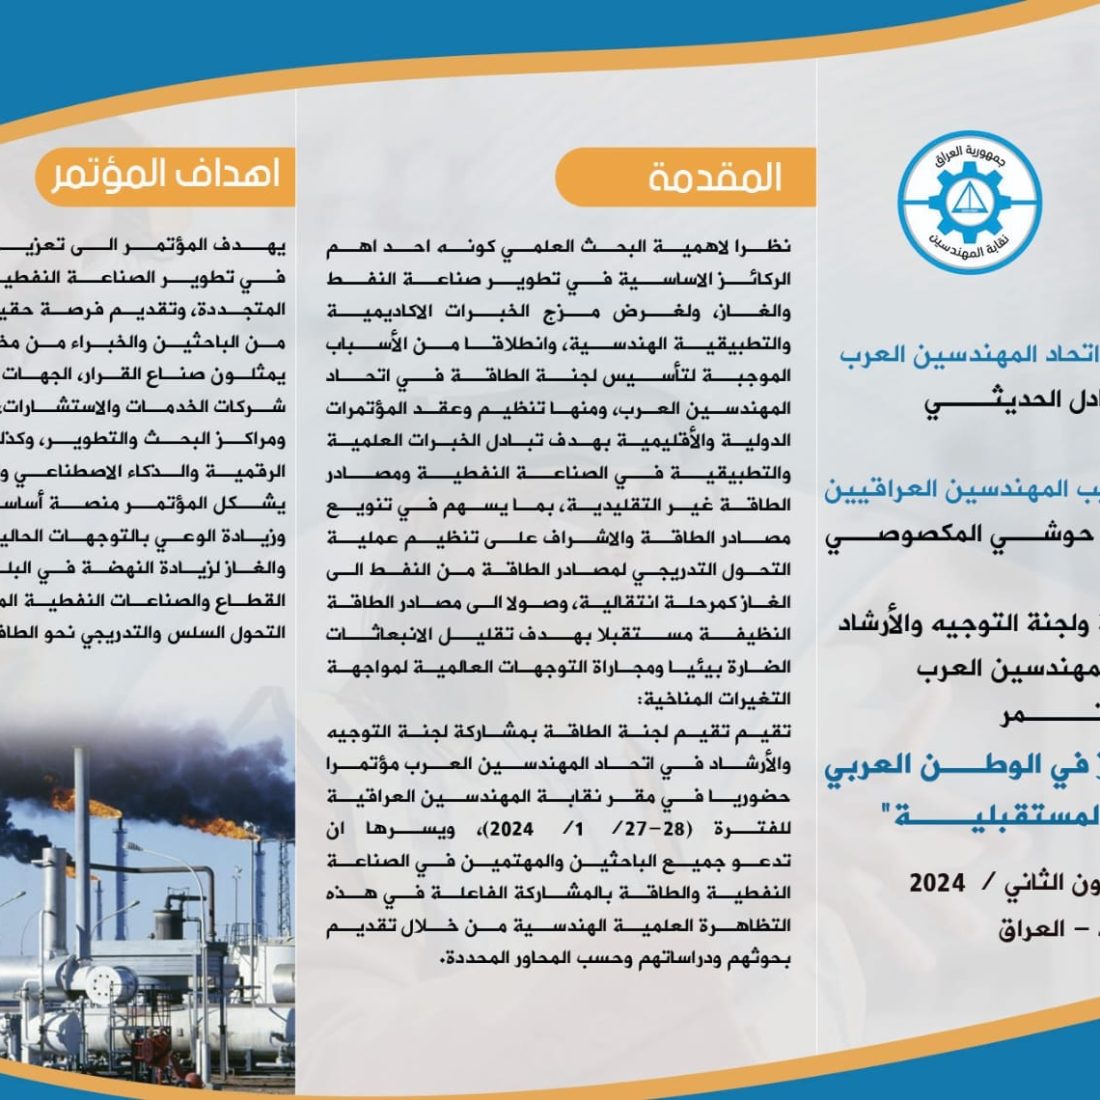 تتشرف نقابة المهندسين العراقية بدعوتكم للمشاركة في  ” النفط والغاز في الوطن العربي وافاقه المستقبلية “مؤتمرها الذي يعقد تحت عنوان